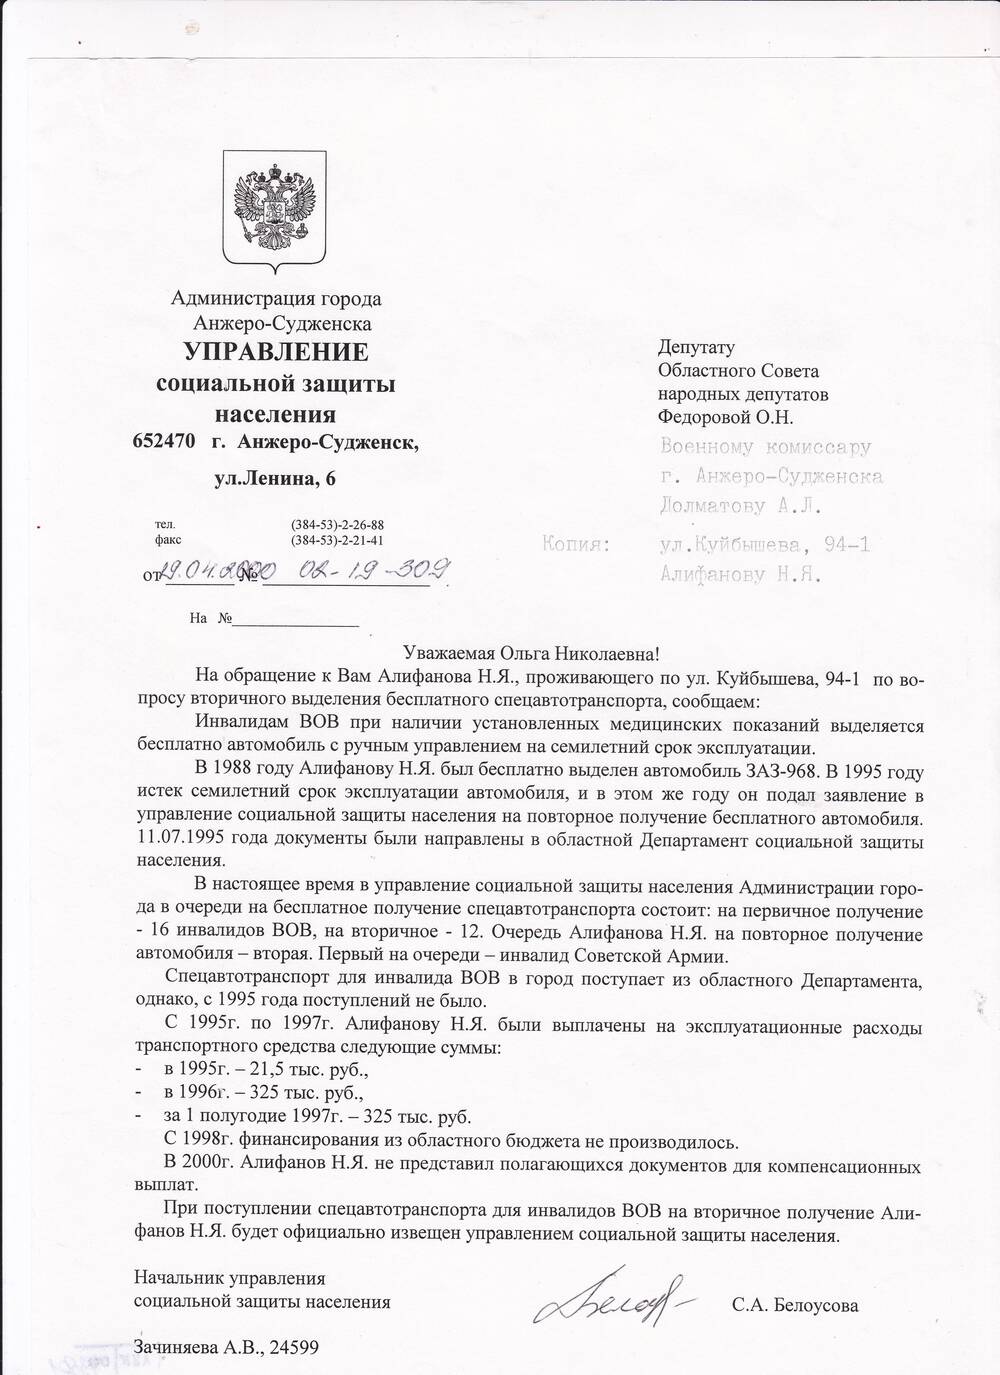 Ответ на депутатский запрос Федоровой О.Н.